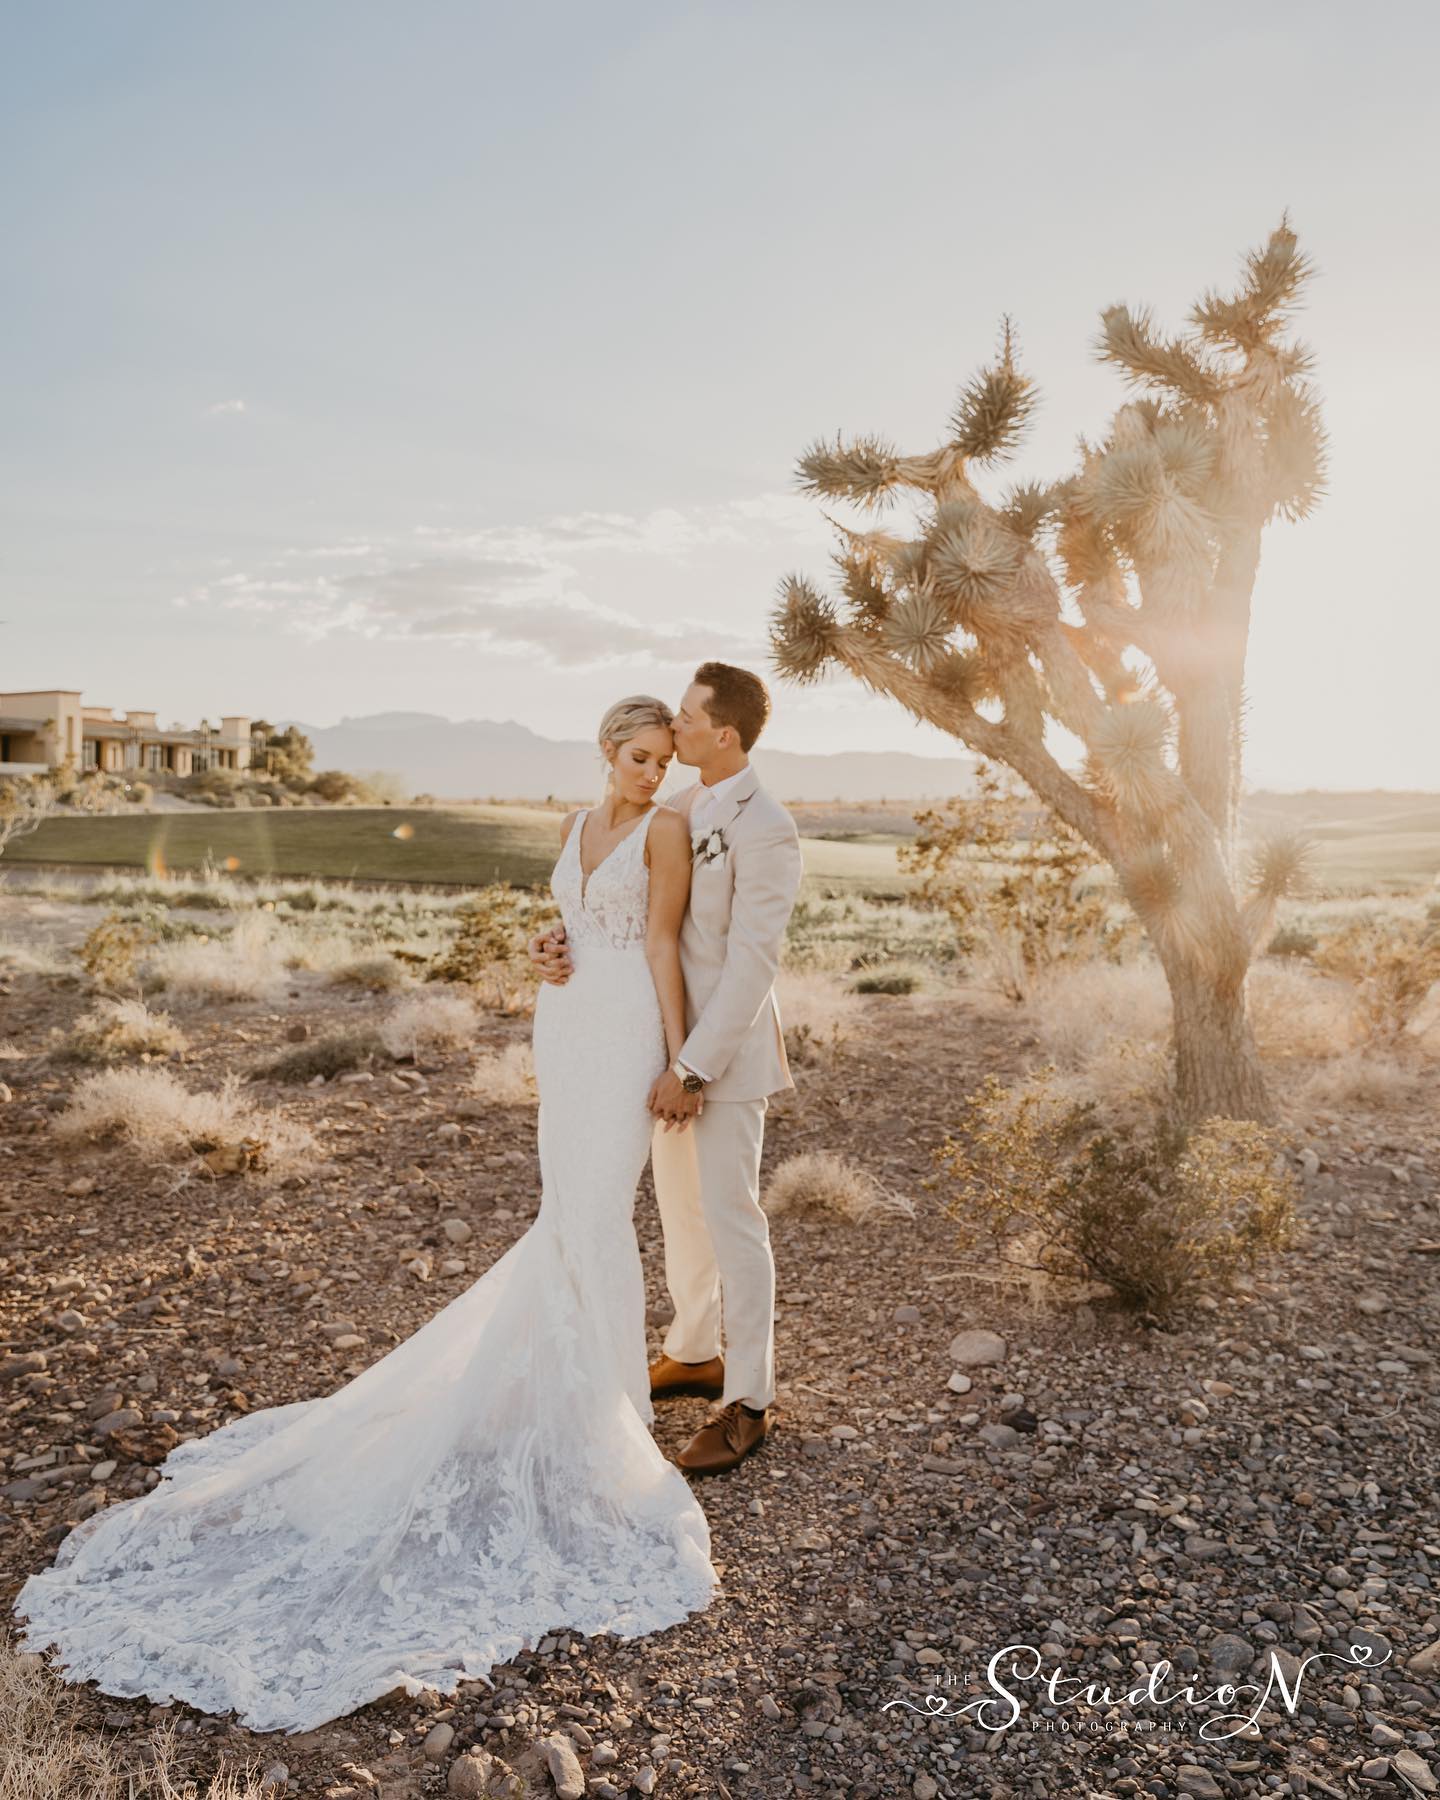 Sarah and Joseph's Tuscan Rose Vineyards wedding - Sarah Hedden Photography